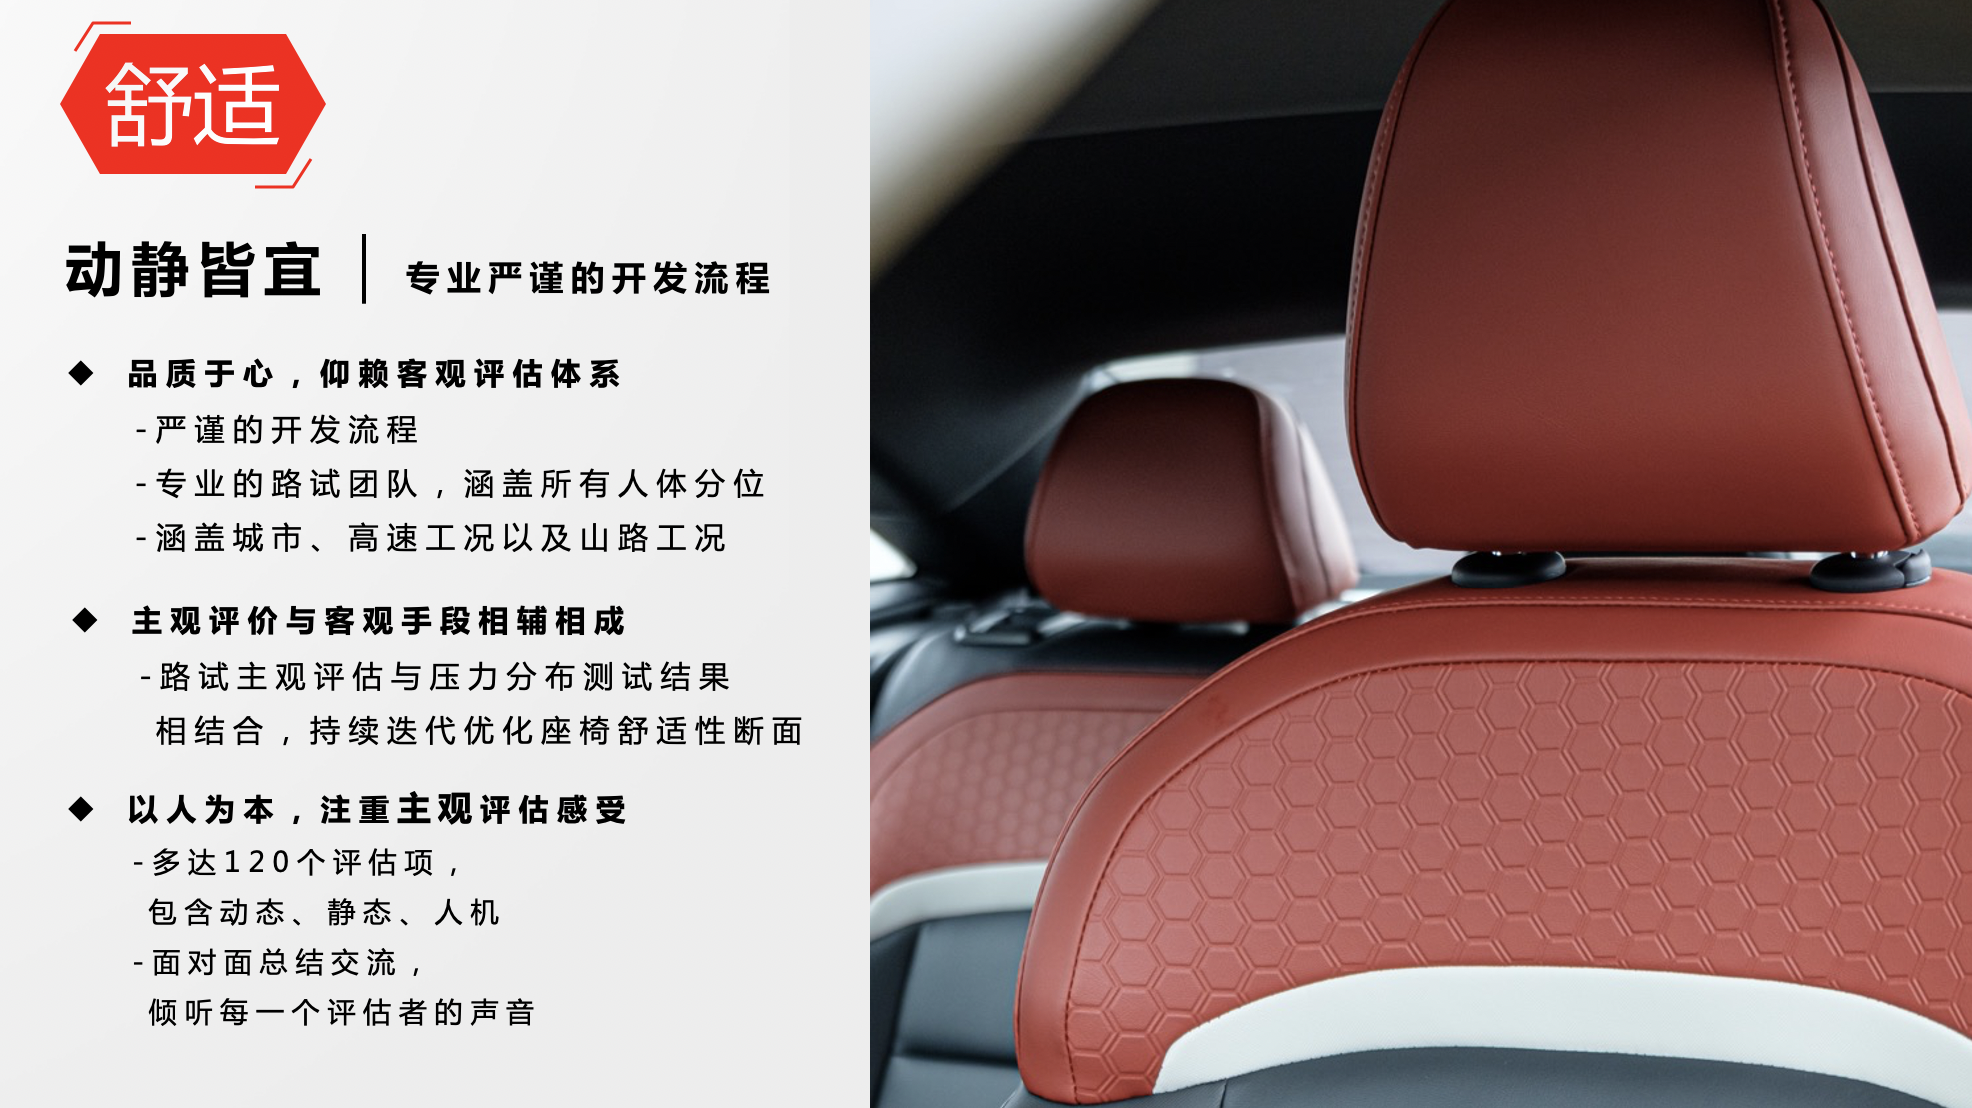 既要舒服也要安全 全新MG5零重力座椅解析